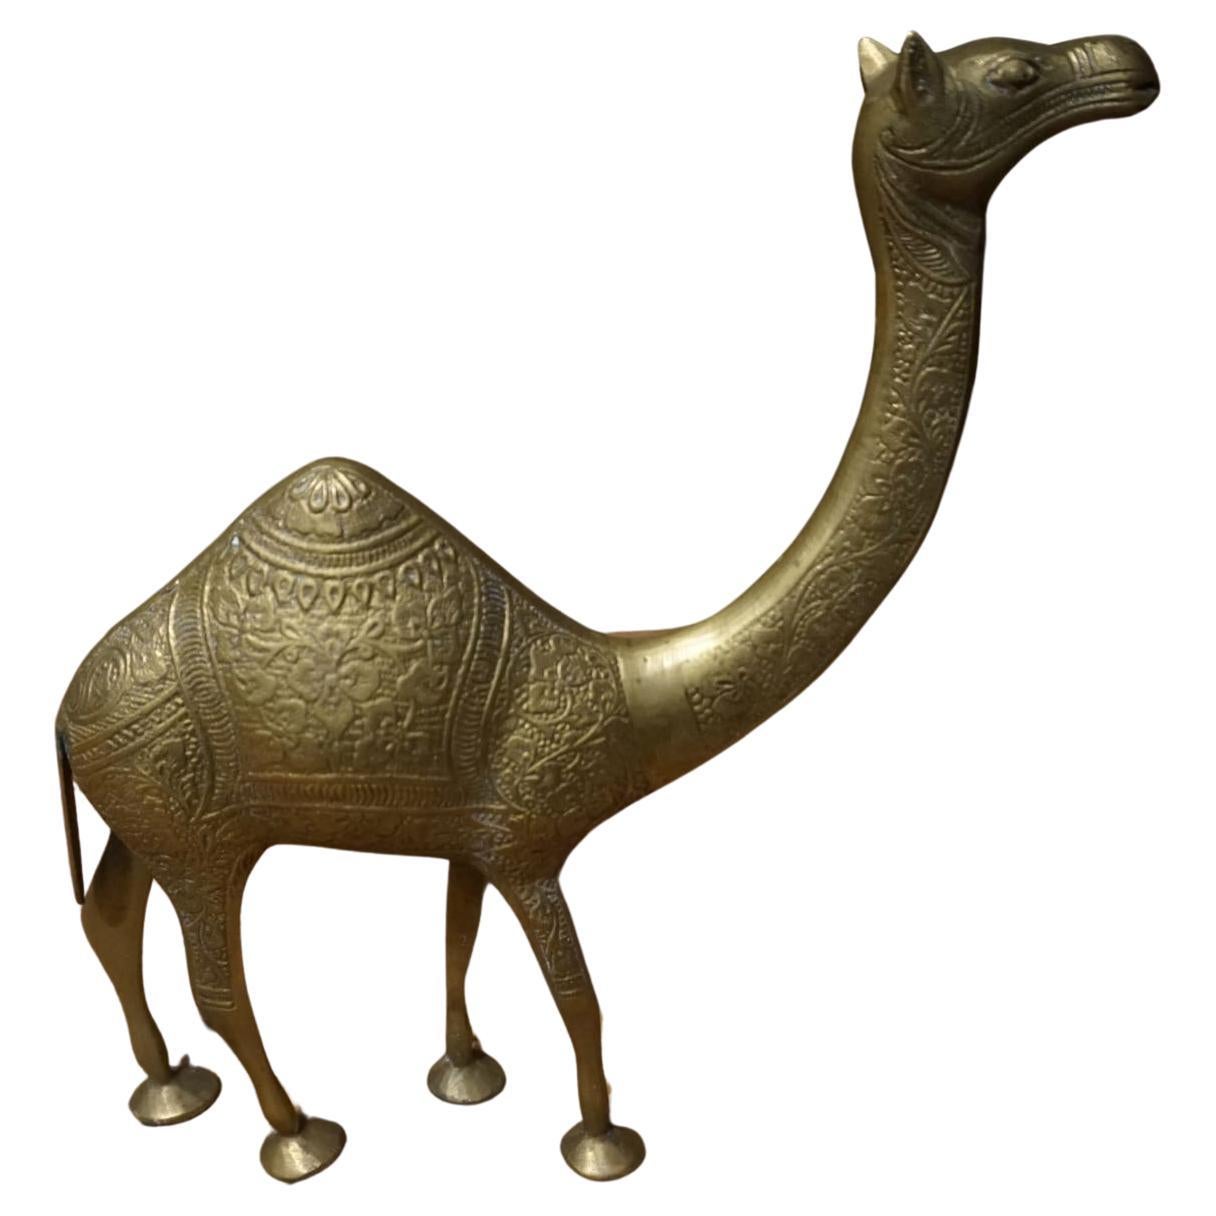 1950's Solid Brass Hand Engraved Camel Sculpture Objet D' Art